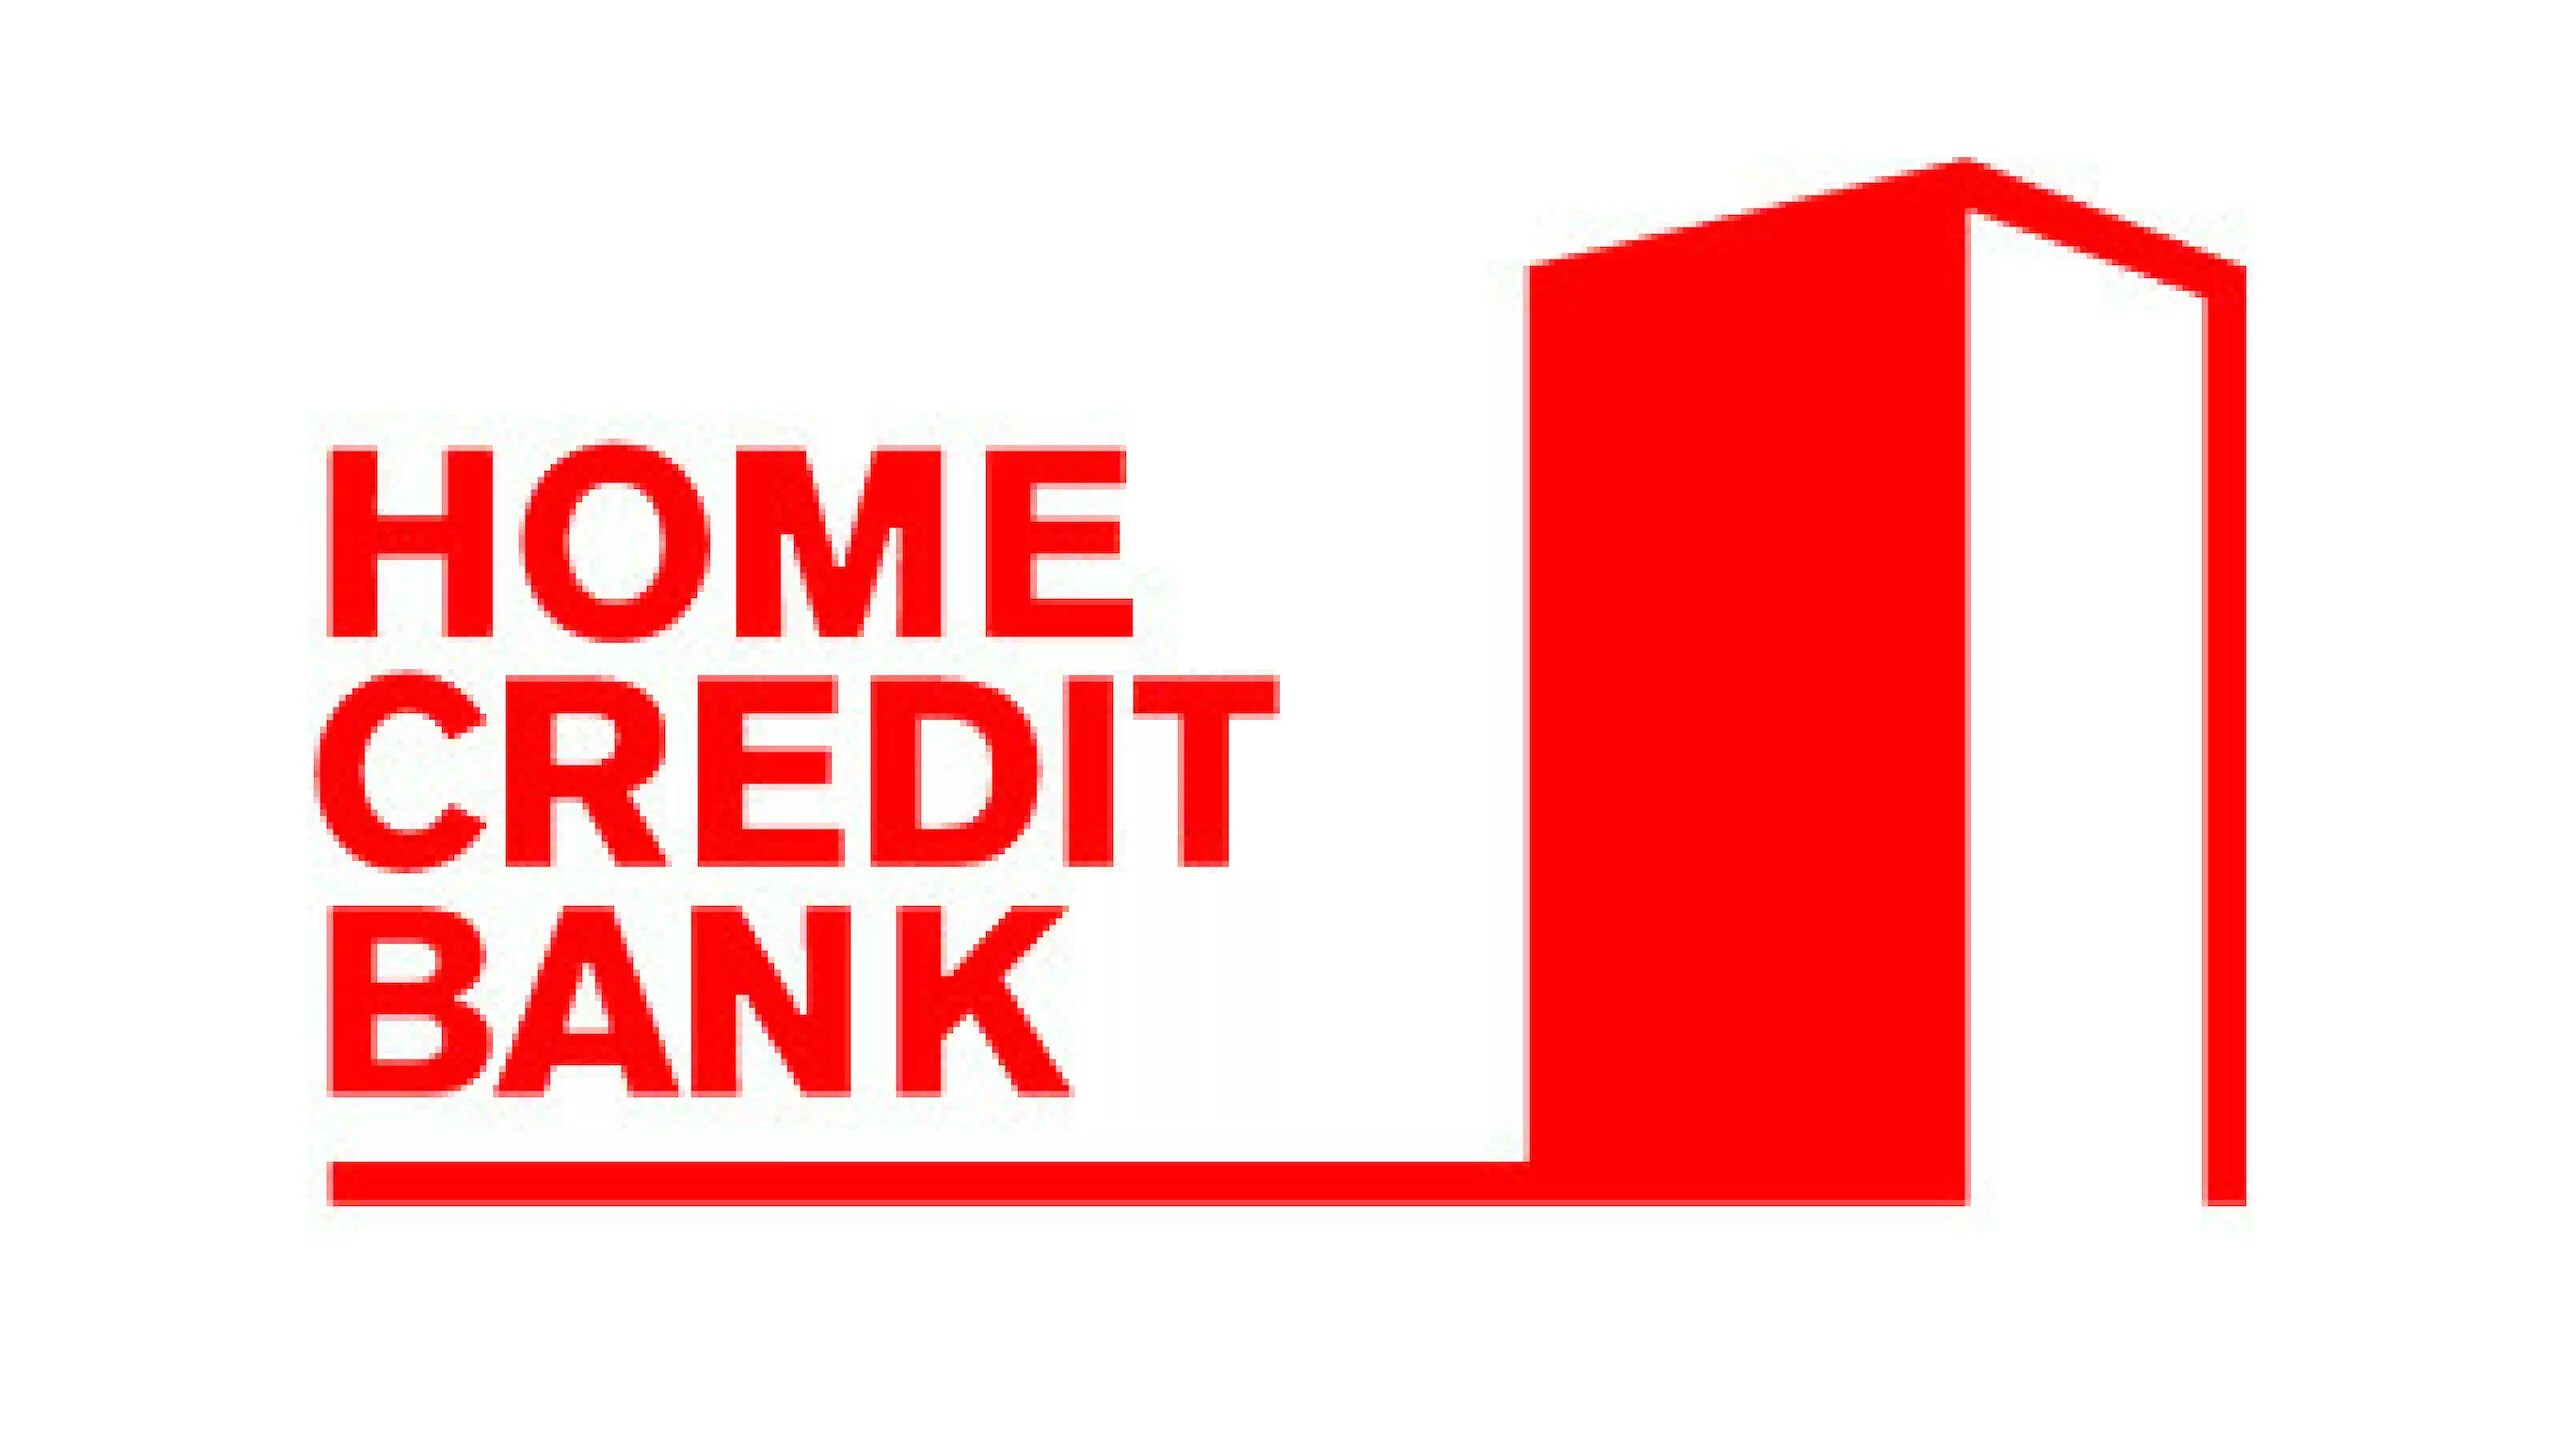 Банк Home credit. Хоум кредит логотип. Логотип Home credit банка. Home credit Bank логотип без фона. Хоум банк название